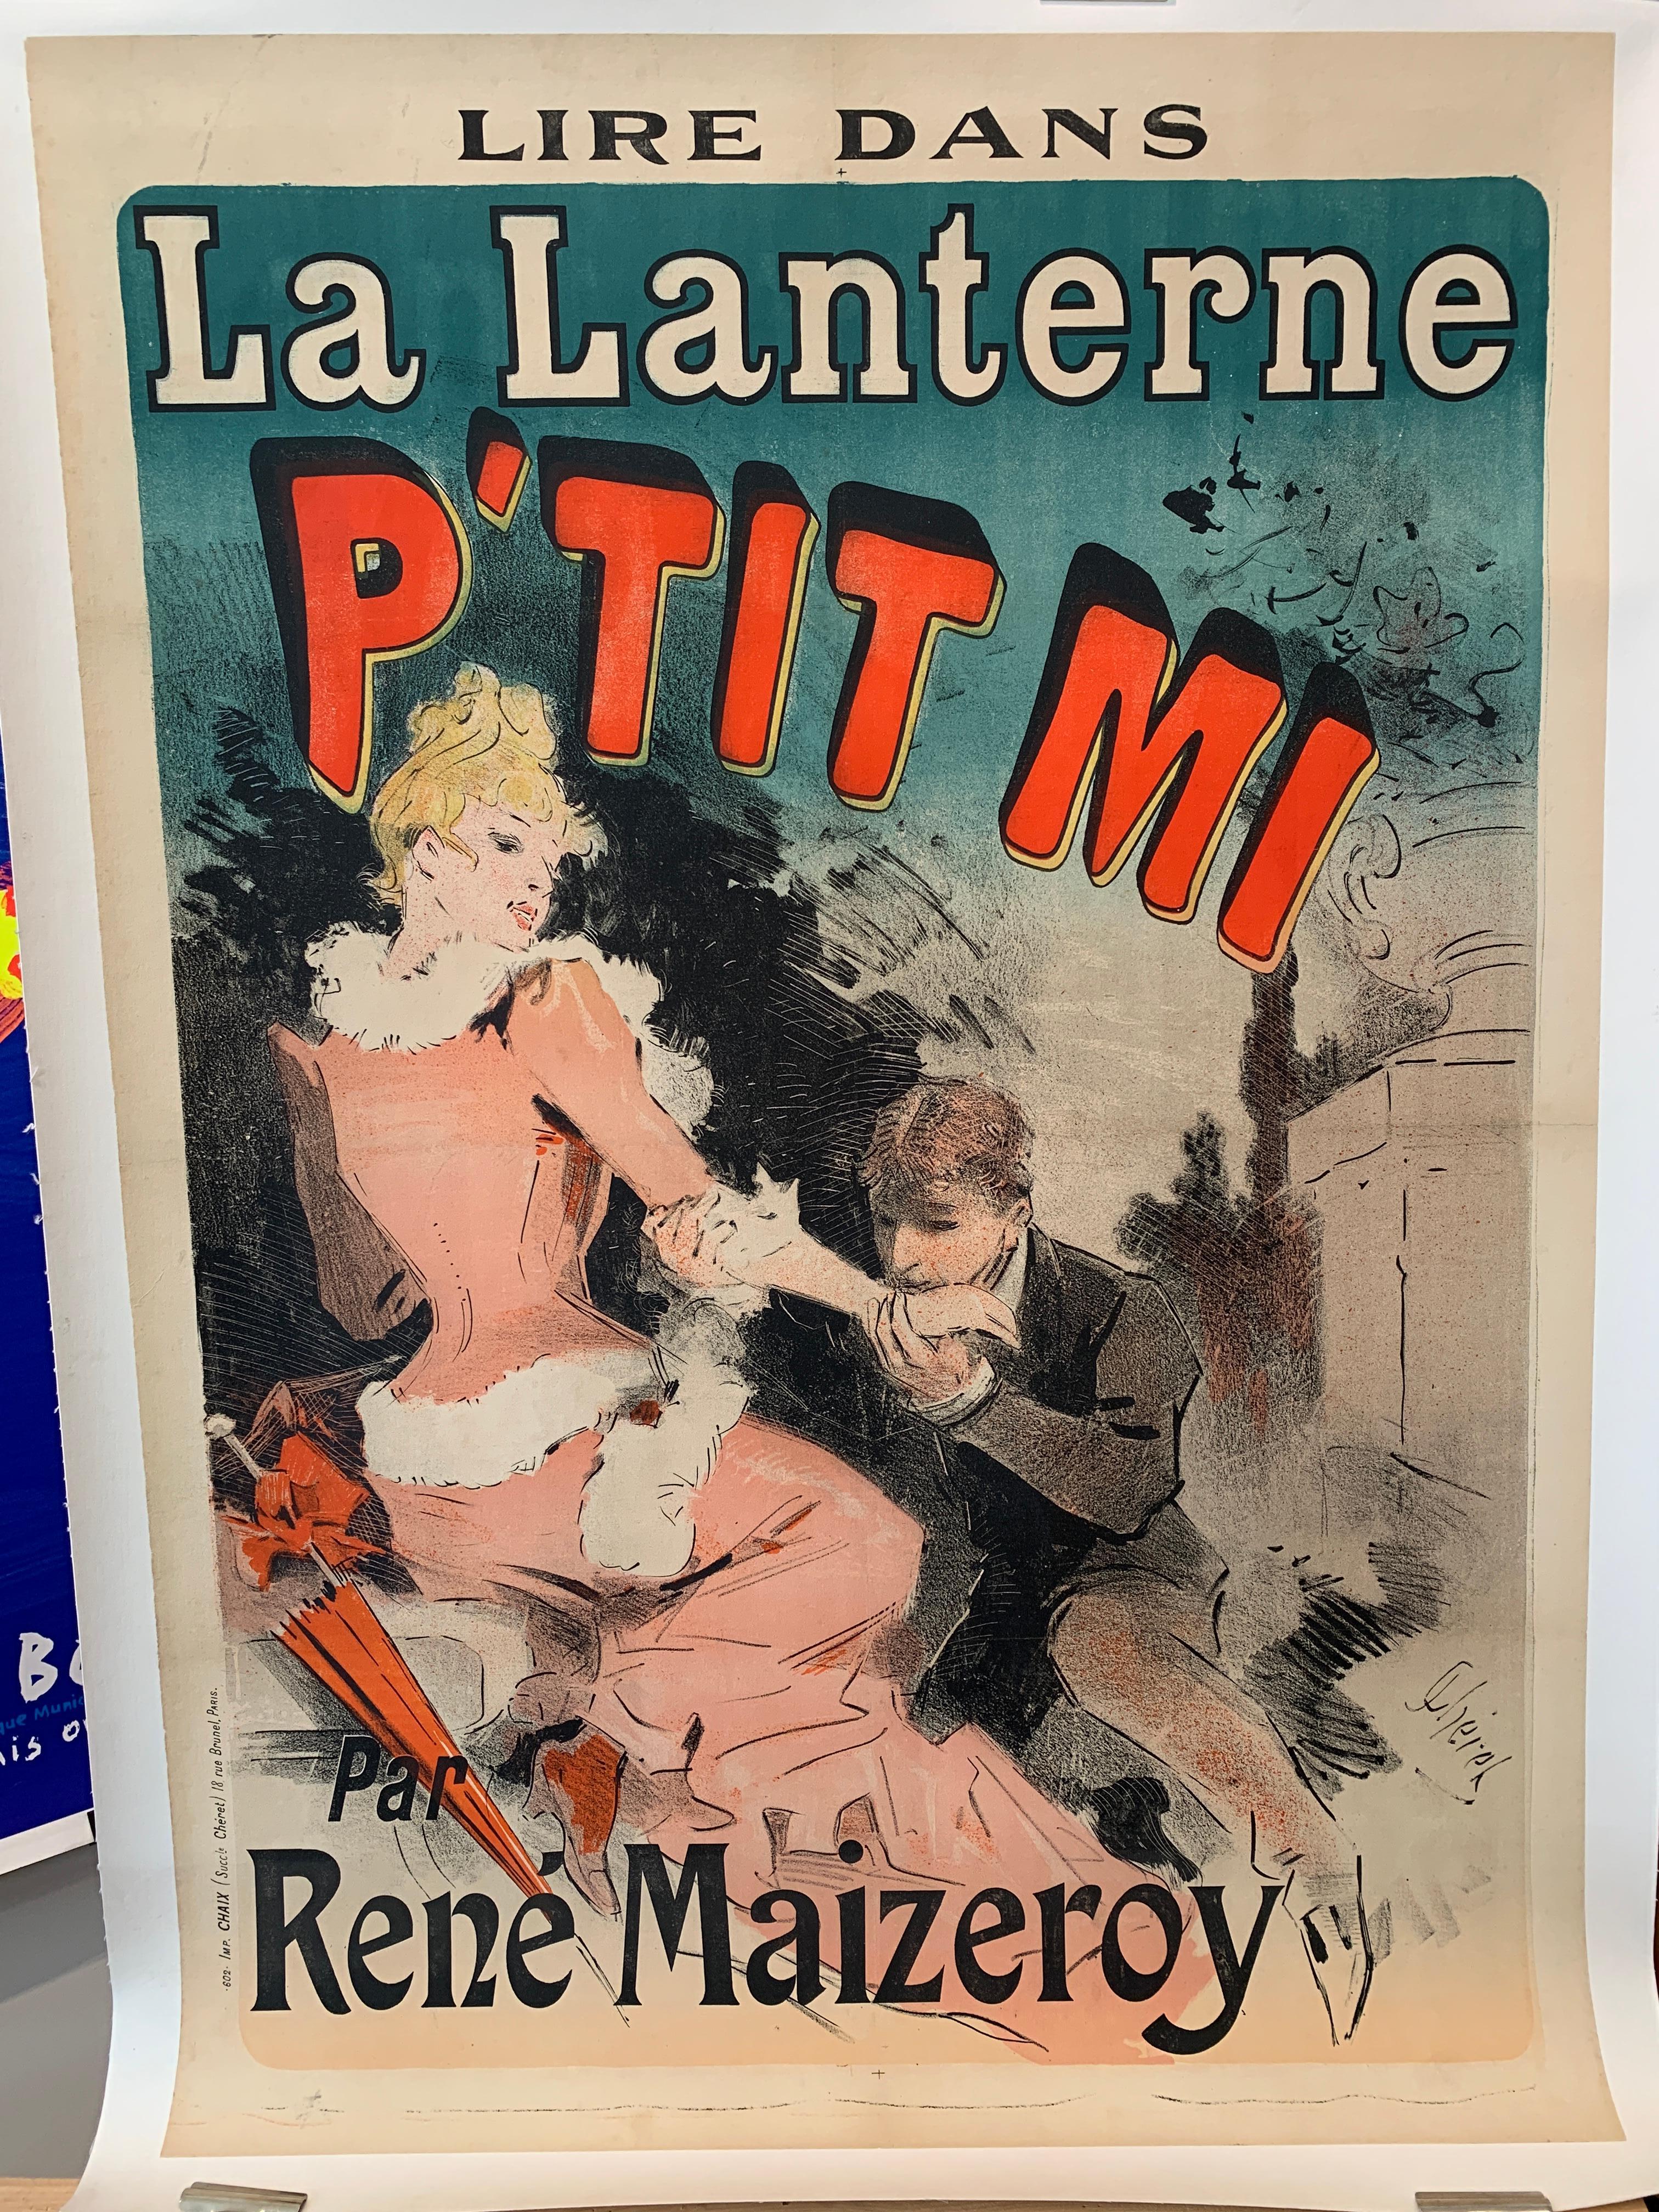 „La Lanterne p'tit mi“, Original-Vintage-Theaterplakat aus dem 18. Jahrhundert von J Cheret

Original Vintage Plakat aus dem Jahr 1890, dieses Plakat wurde auf Leinen für die Erhaltung zurückgegeben. Die Farben sind leuchtend. 

KÜNSTLER	
J